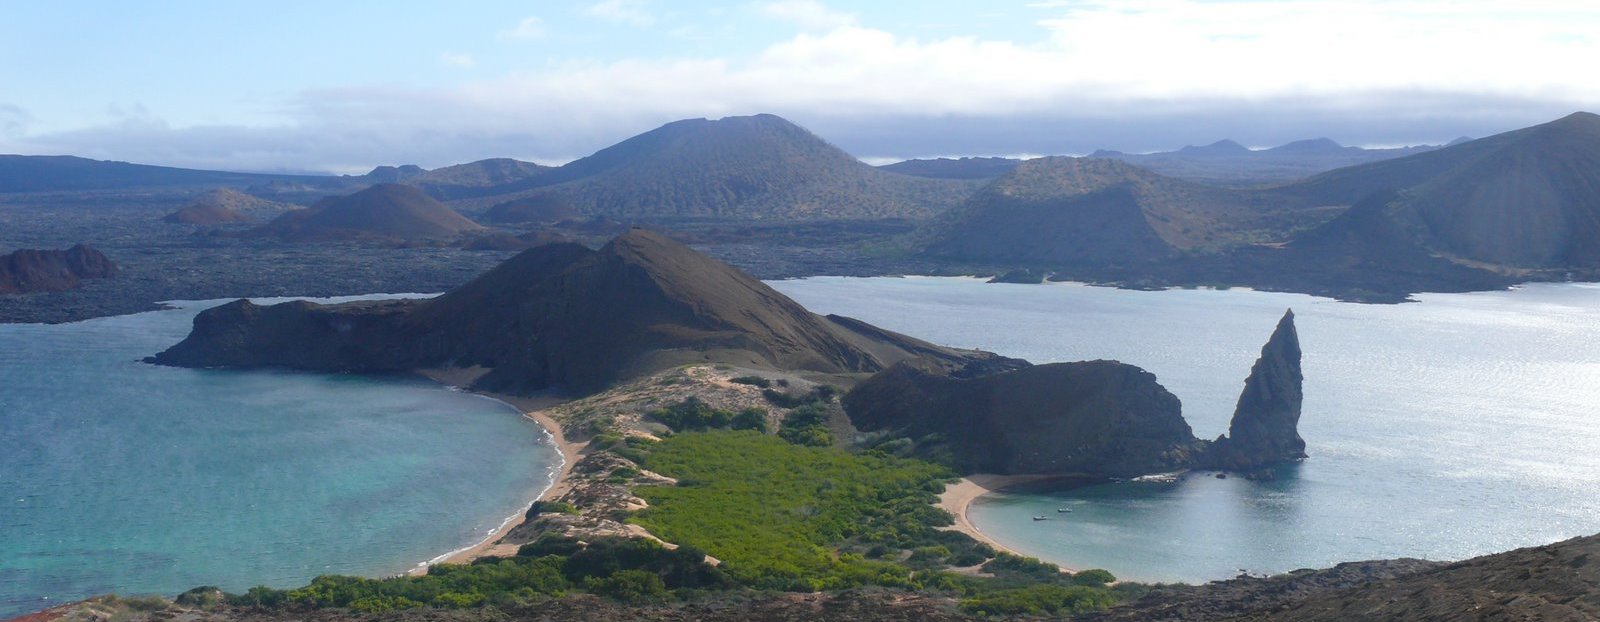 Galapagos mit Jugendlichen - Reisebericht über Galapagos - Galapagos Berge